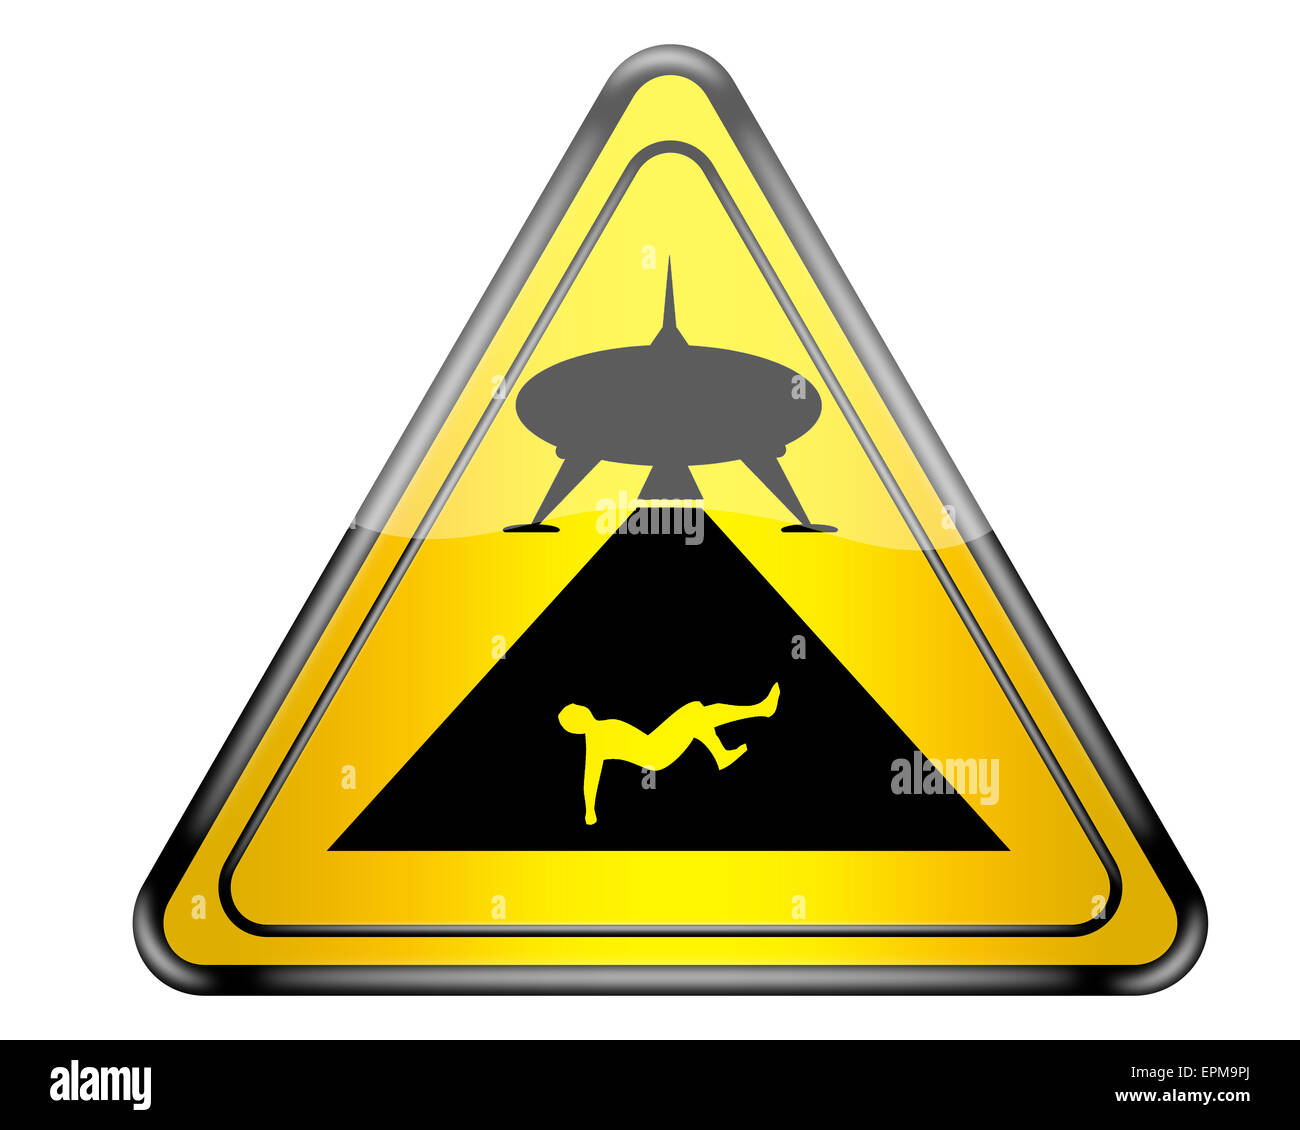 Fun UFO warning sign. Stock Photo